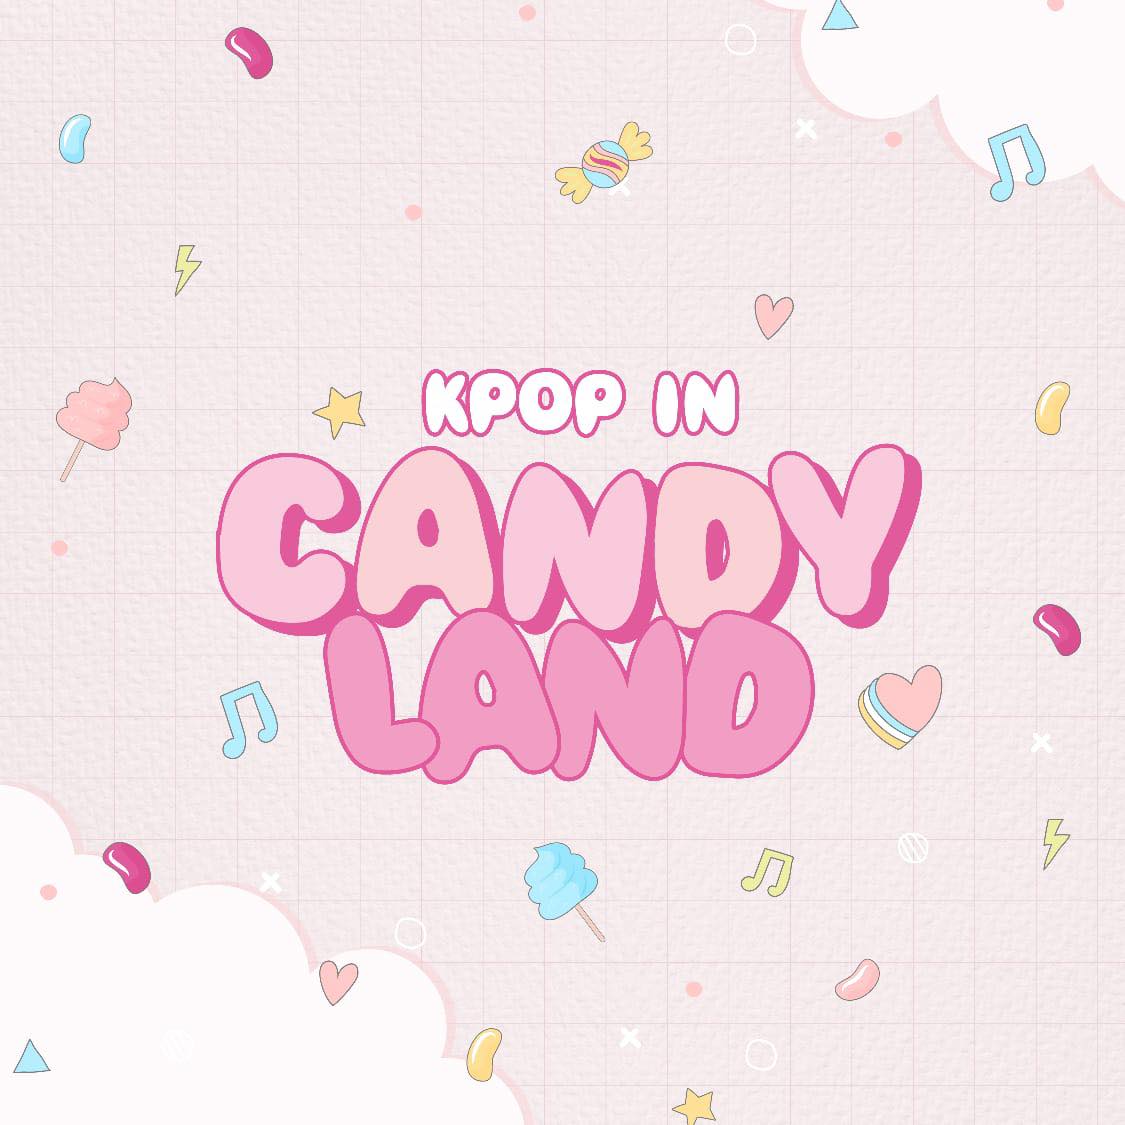 «KPOP IN CANDYLAND: Un evento épico para los fanáticos del K-pop y el anime»